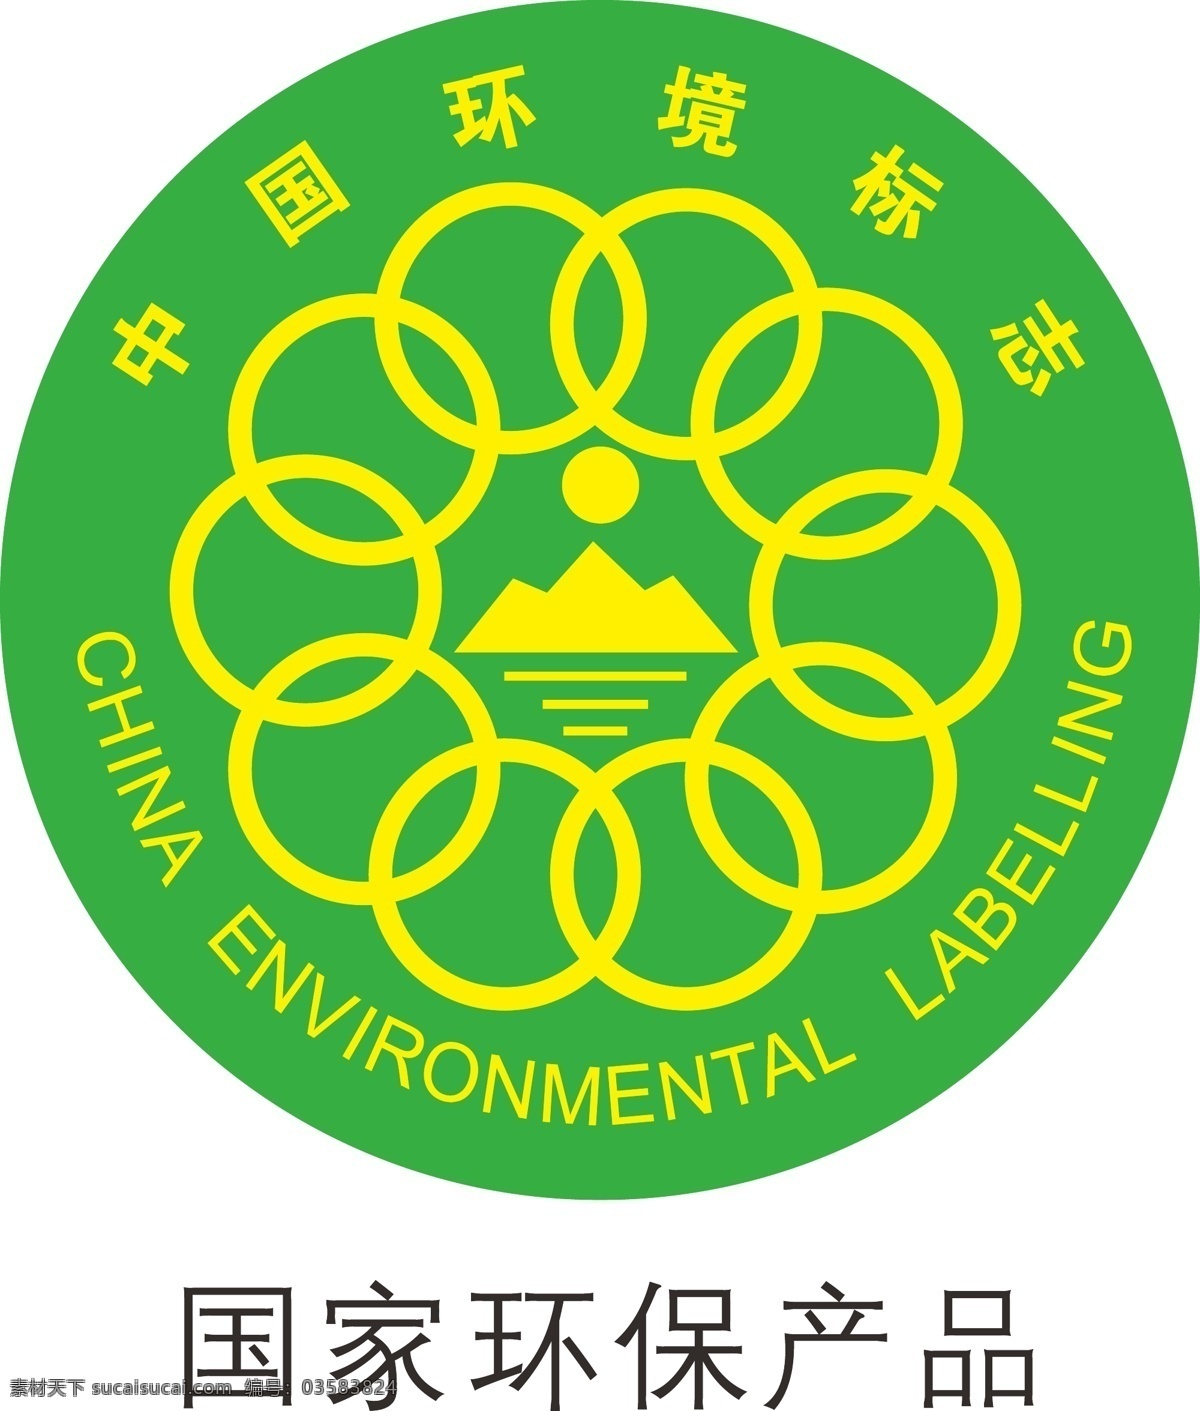 环保 环保标志 中国环保标志 环保认证 洗衣粉素材 洗衣液素材 包装设计